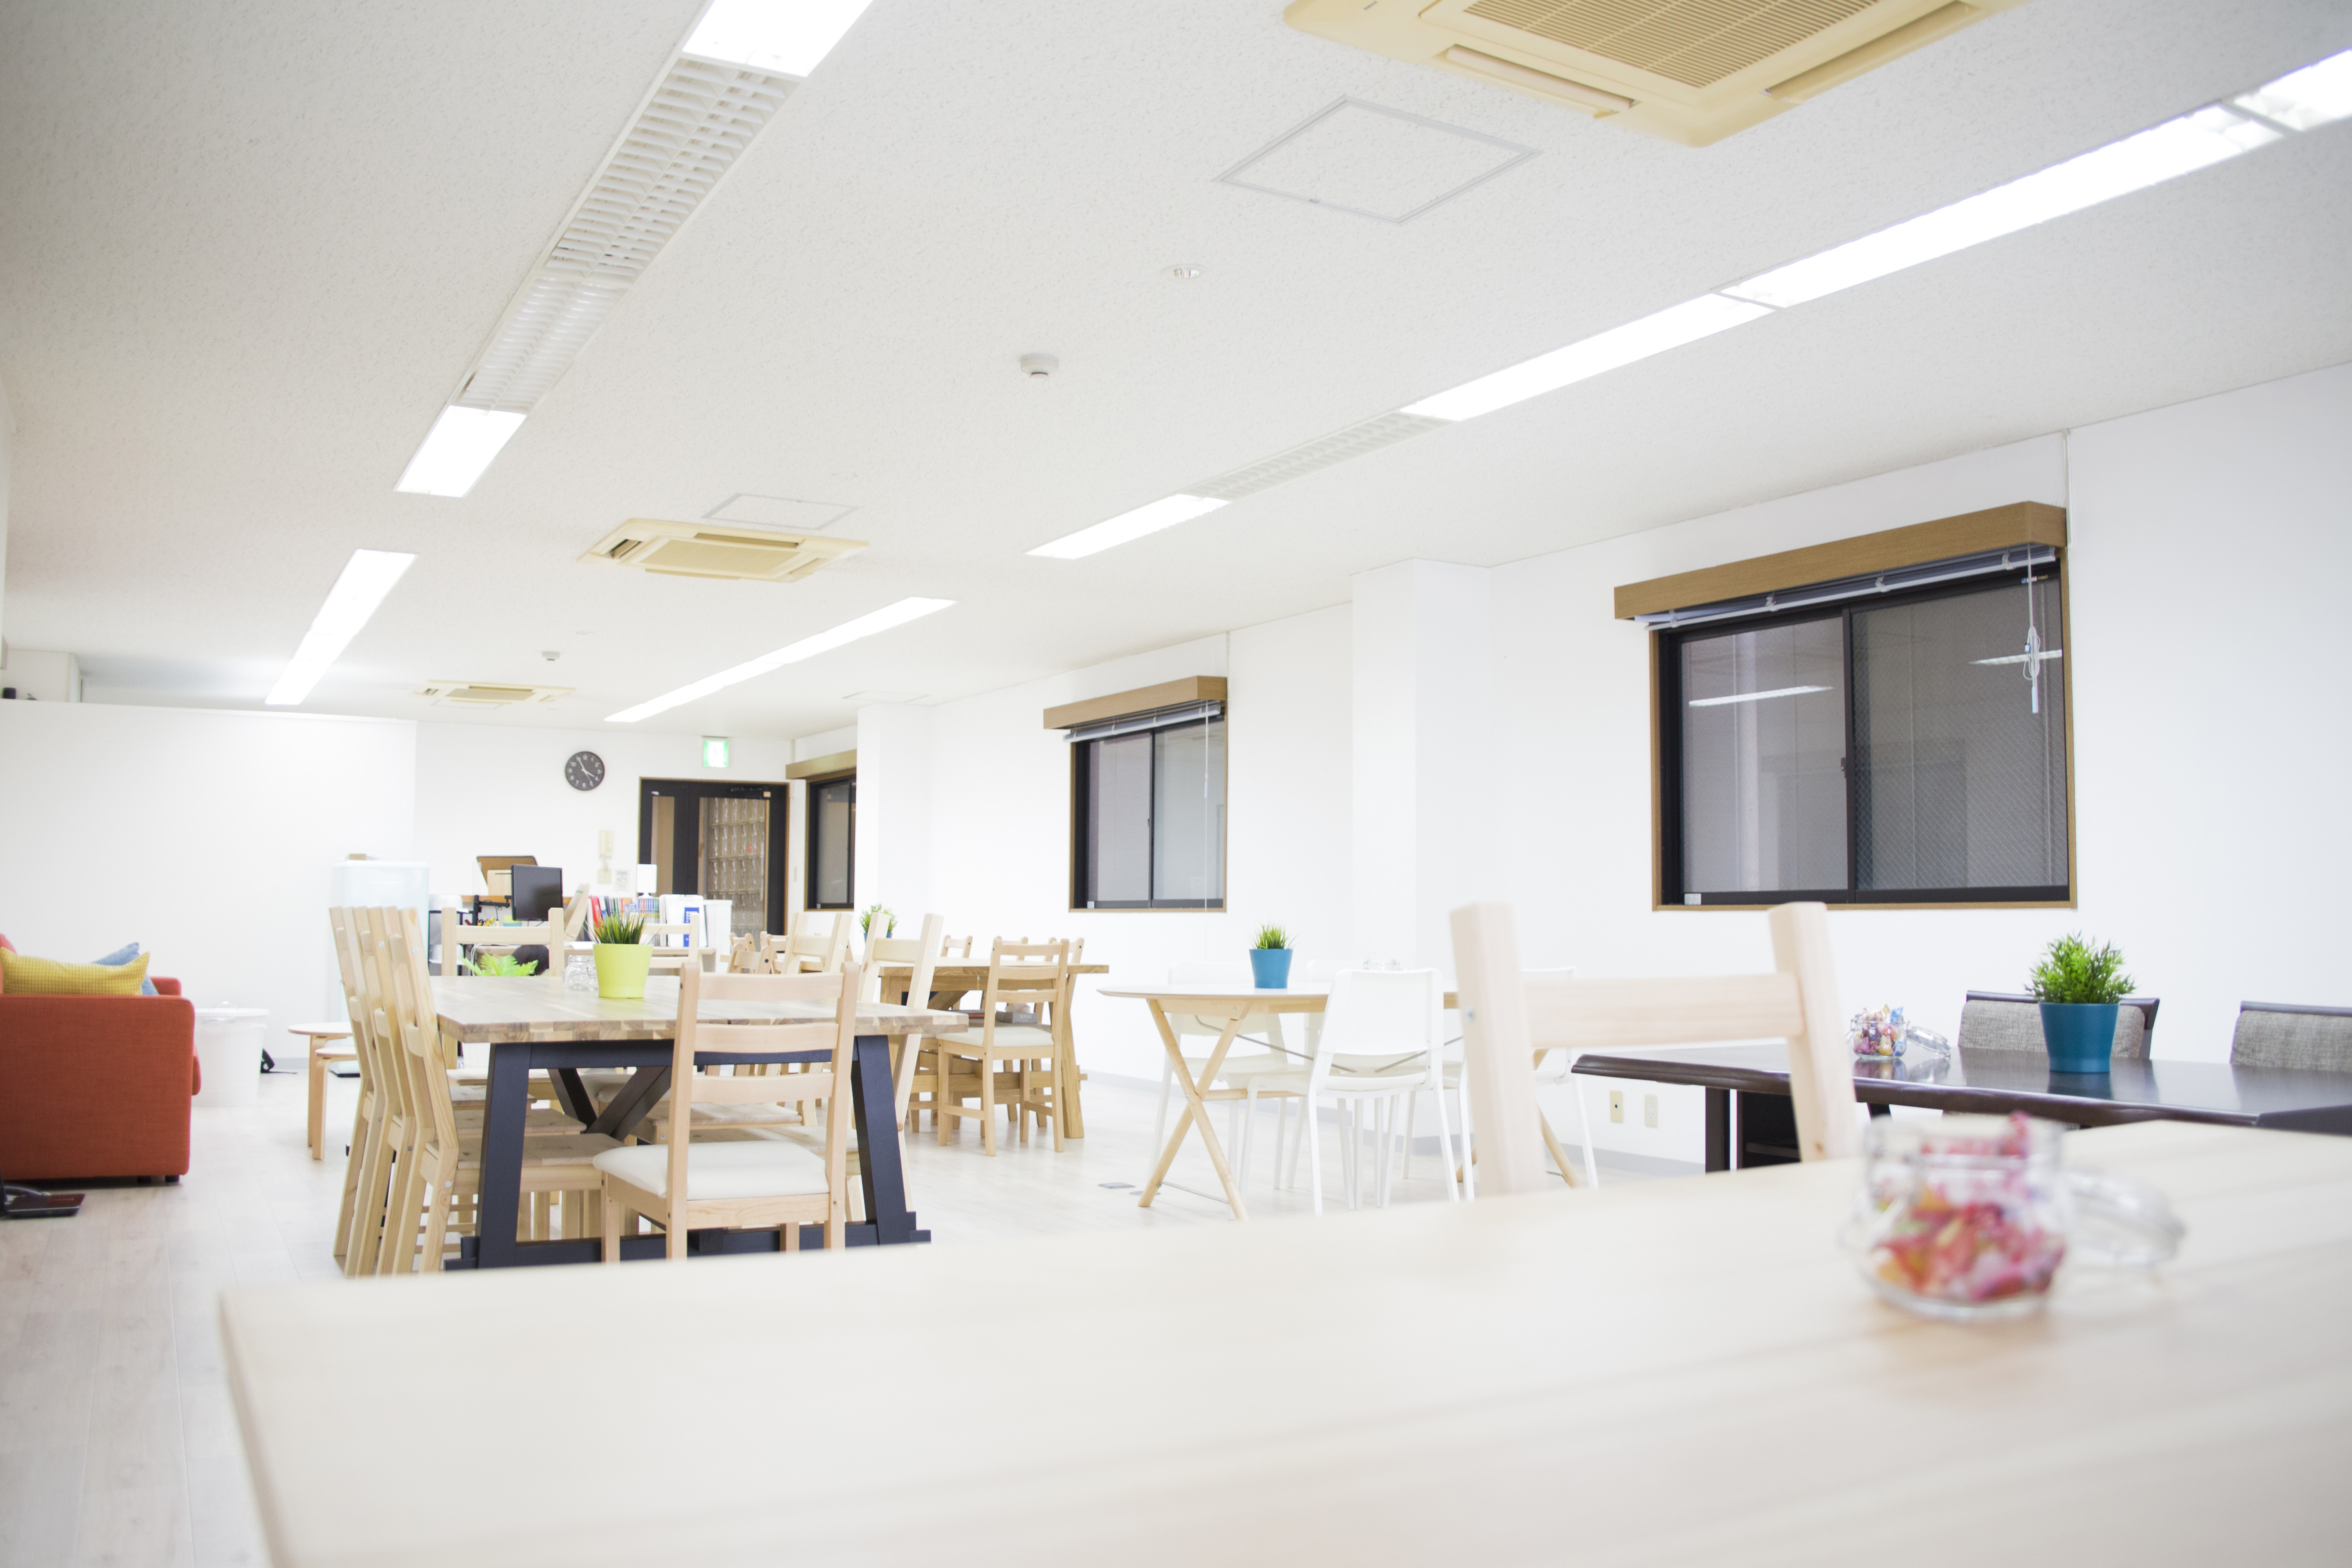 日本初 中高生無料の勉強カフェ リバスタが誕生 株式会社updateのプレスリリース